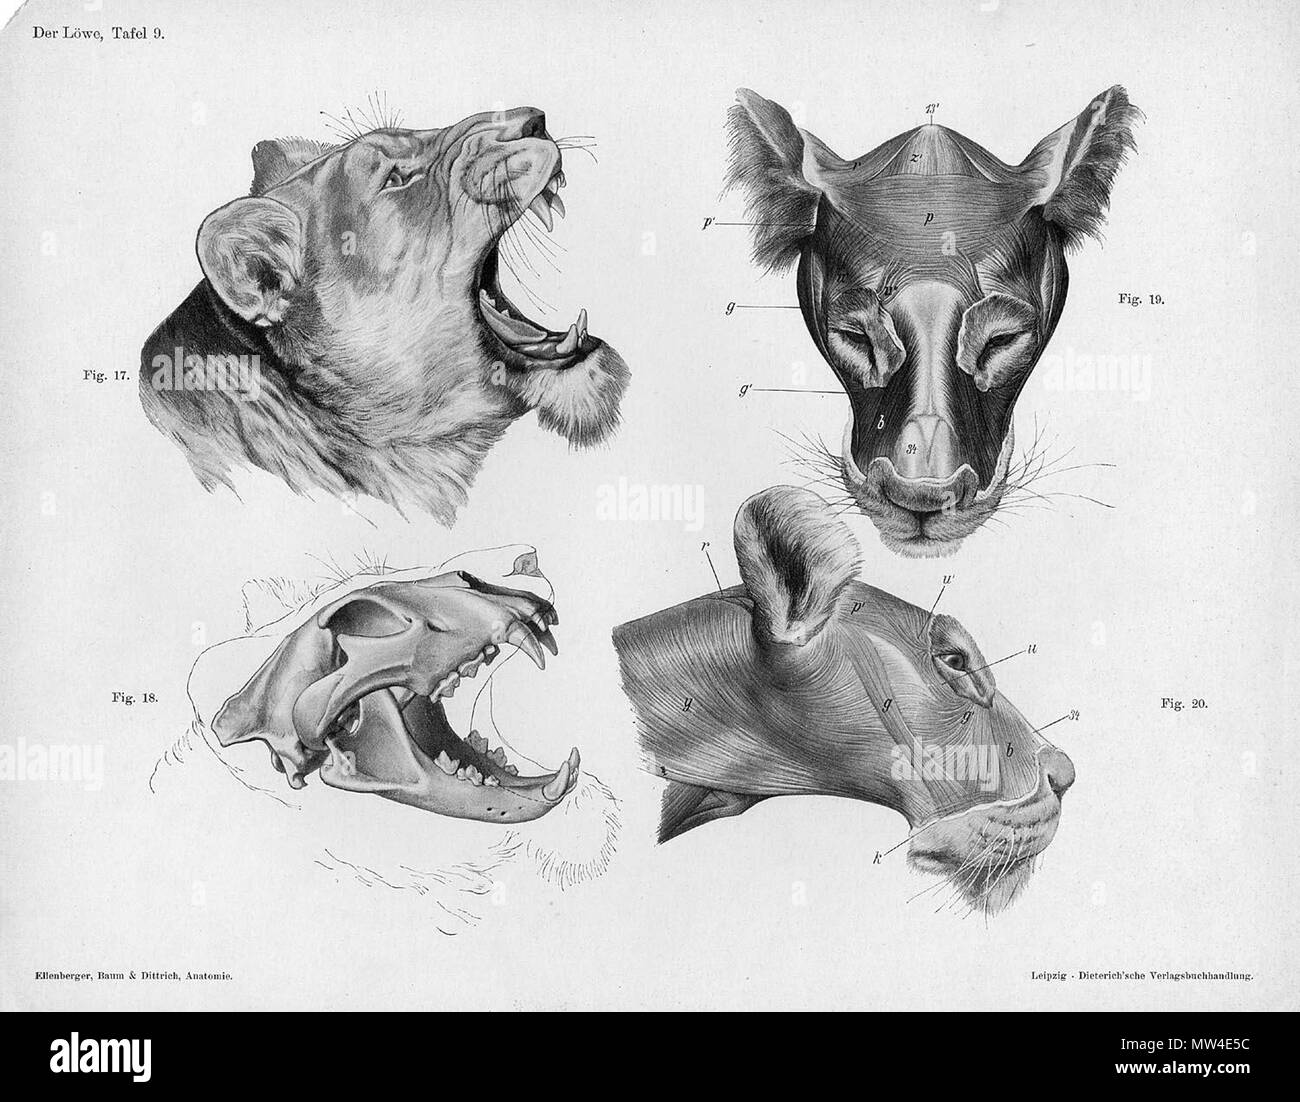 . Anatómica Animal grabado de Handbuch der Anatomie der Tiere für Künstler" - Hermann Dittrich, Illustrator. 1889 y 1911-1925. Wilhelm Ellenberger y Hermann Baum 373 anatomía cabeza de león Foto de stock